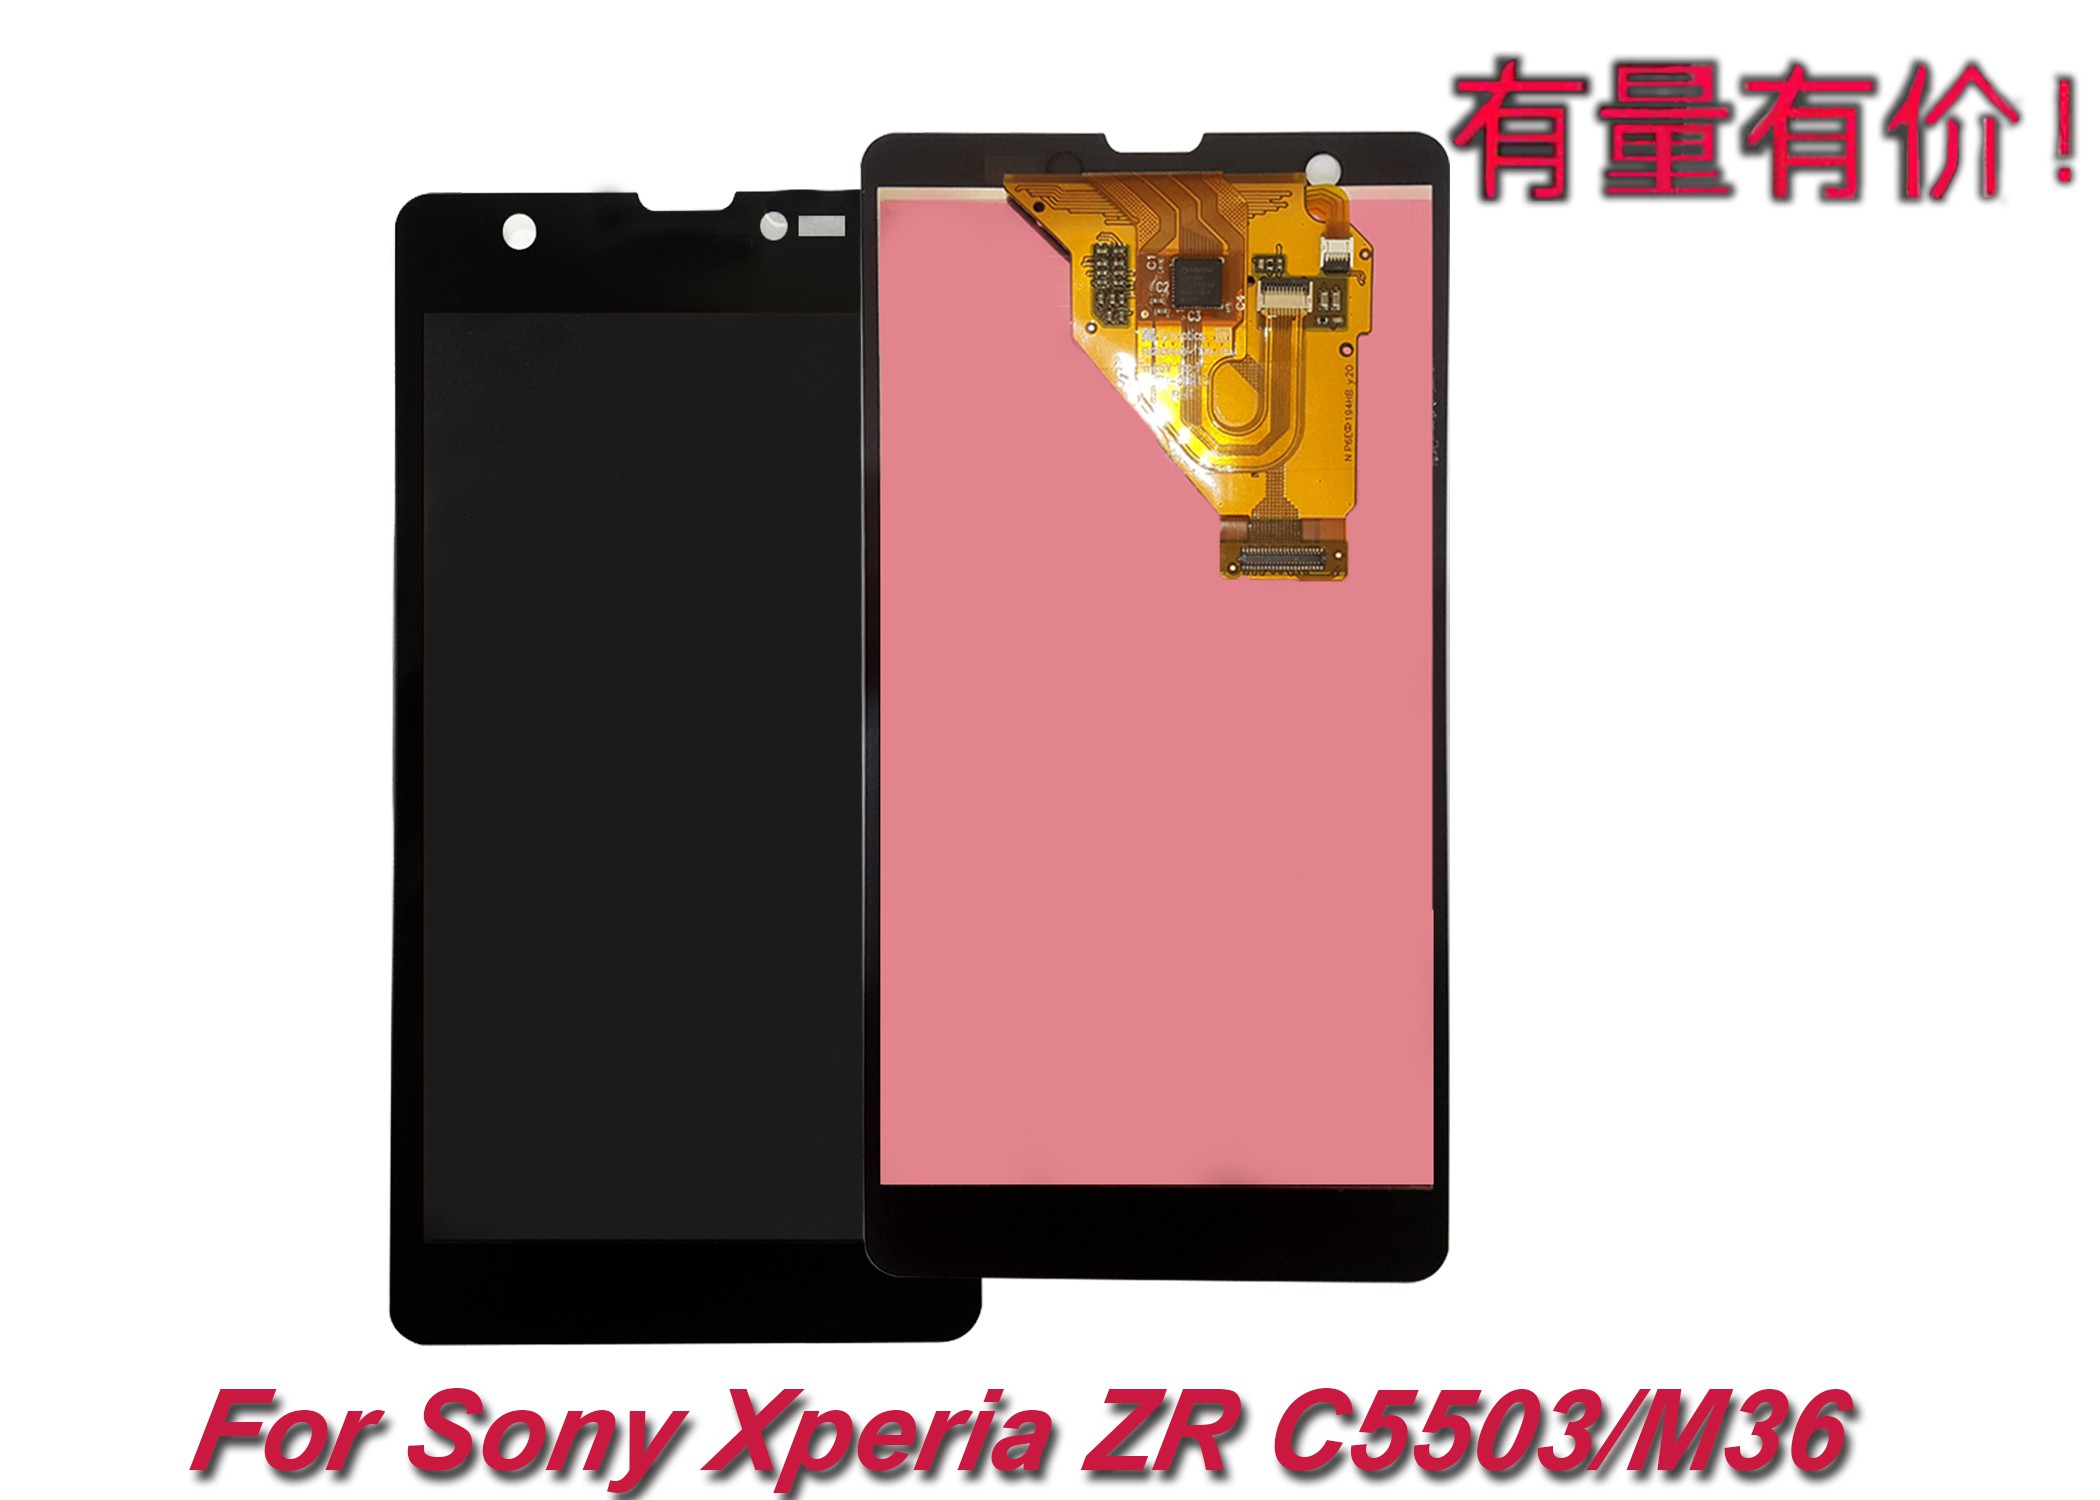 Màn Hình Cảm Ứng Lcd Sony C5503 - C5502 - M36 - Xperia Zr - Sny - Ts